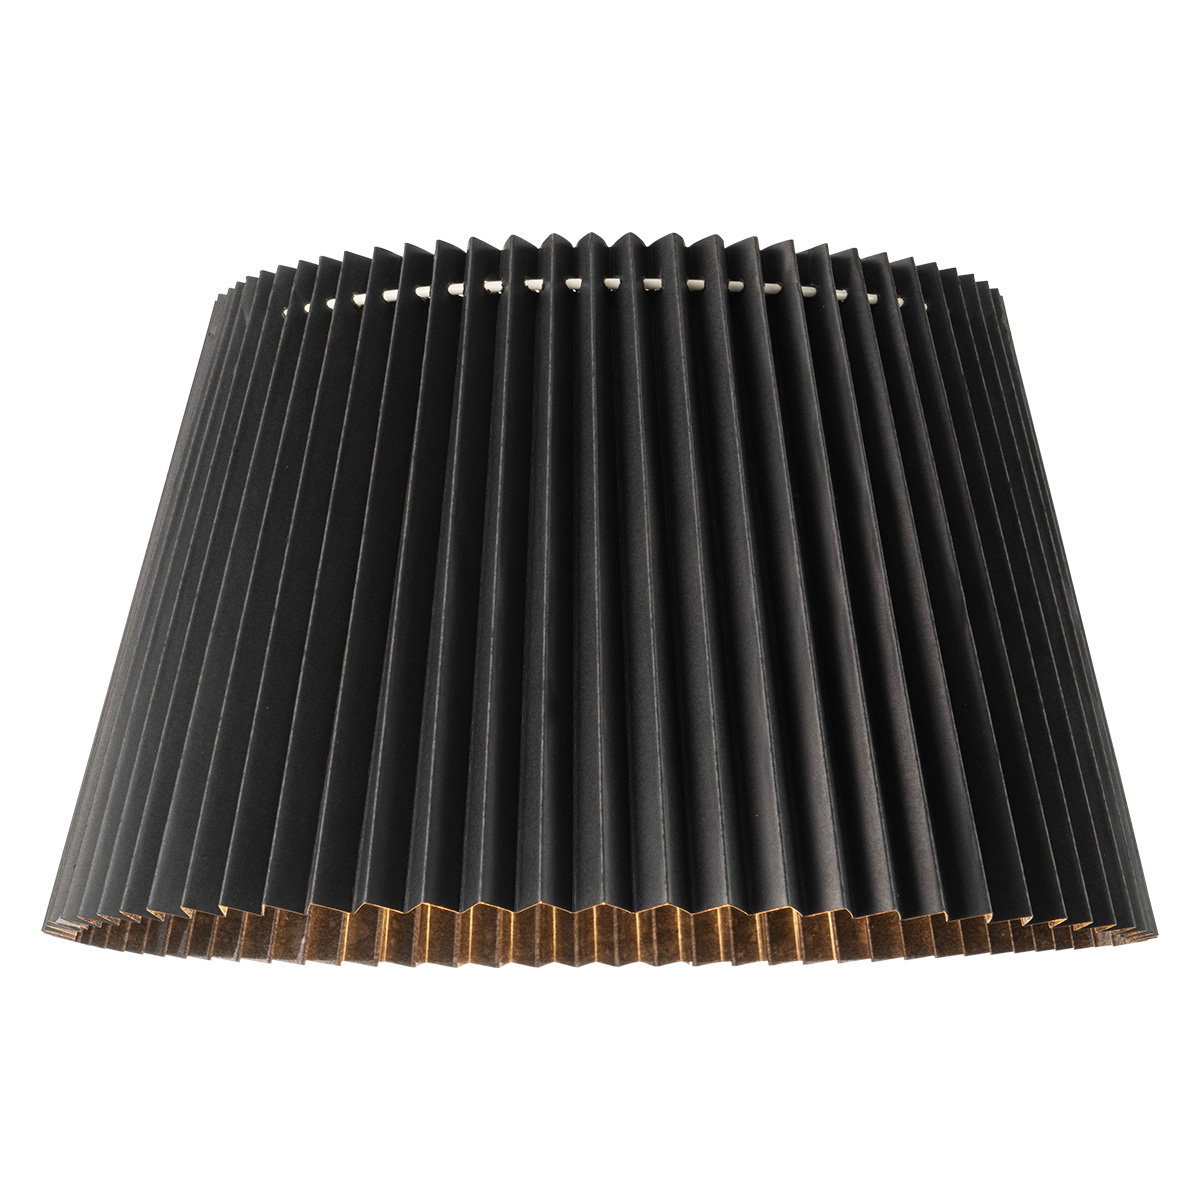 Tangla lighting - TLS7457-01BK - Lampshade - metal and paper - black - taper - diameter 40cm - E27